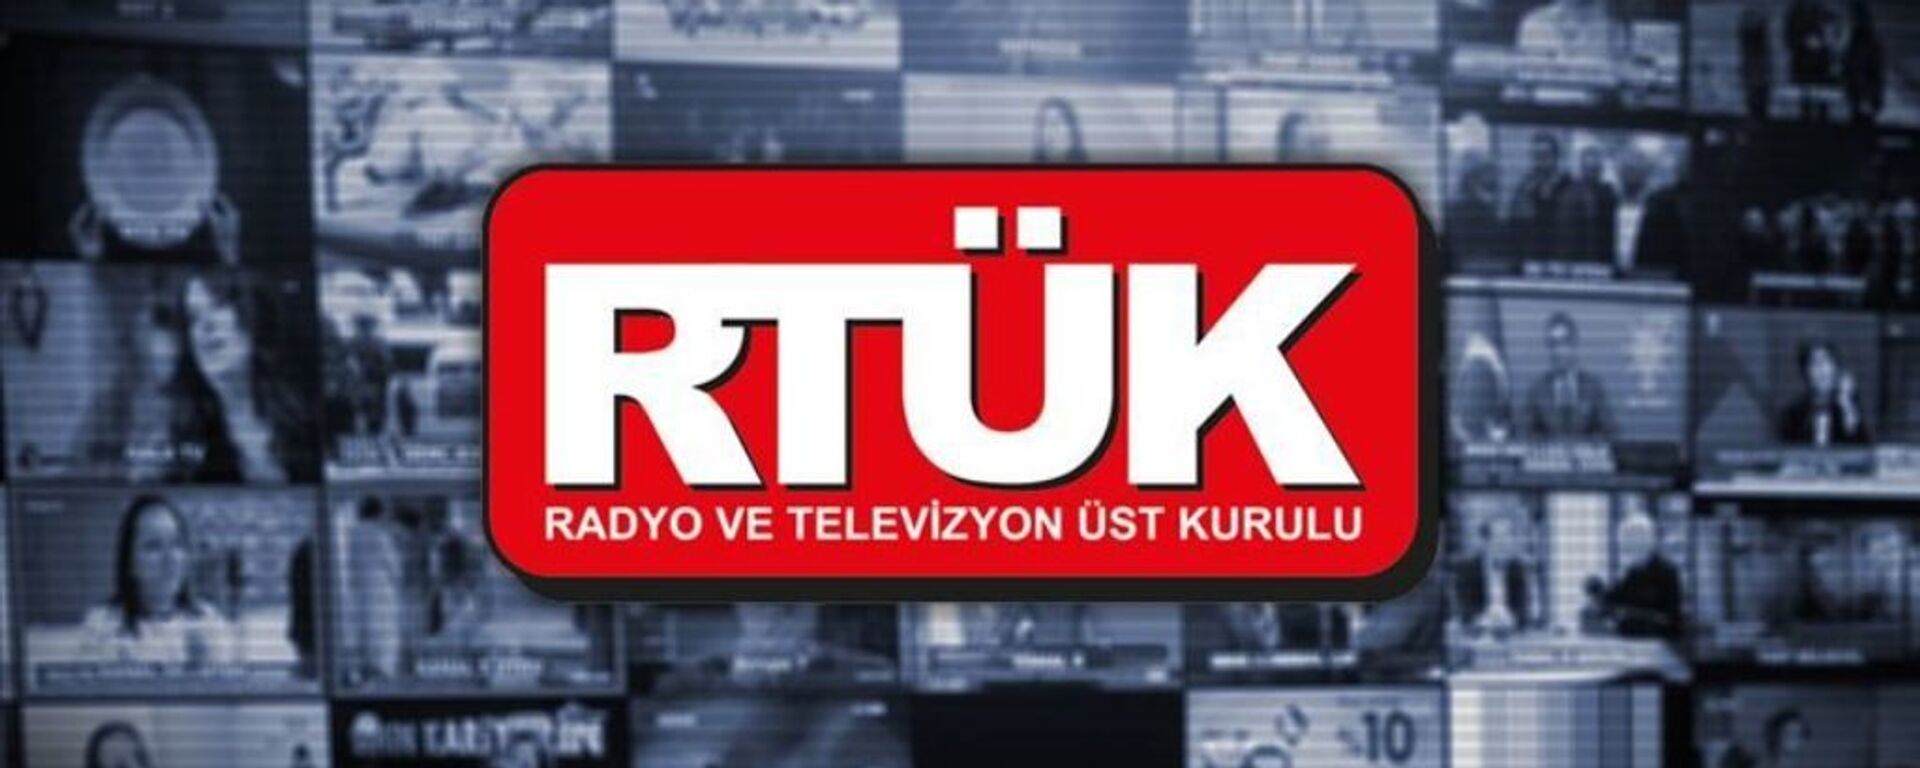 RTÜK - Sputnik Türkiye, 1920, 30.03.2021